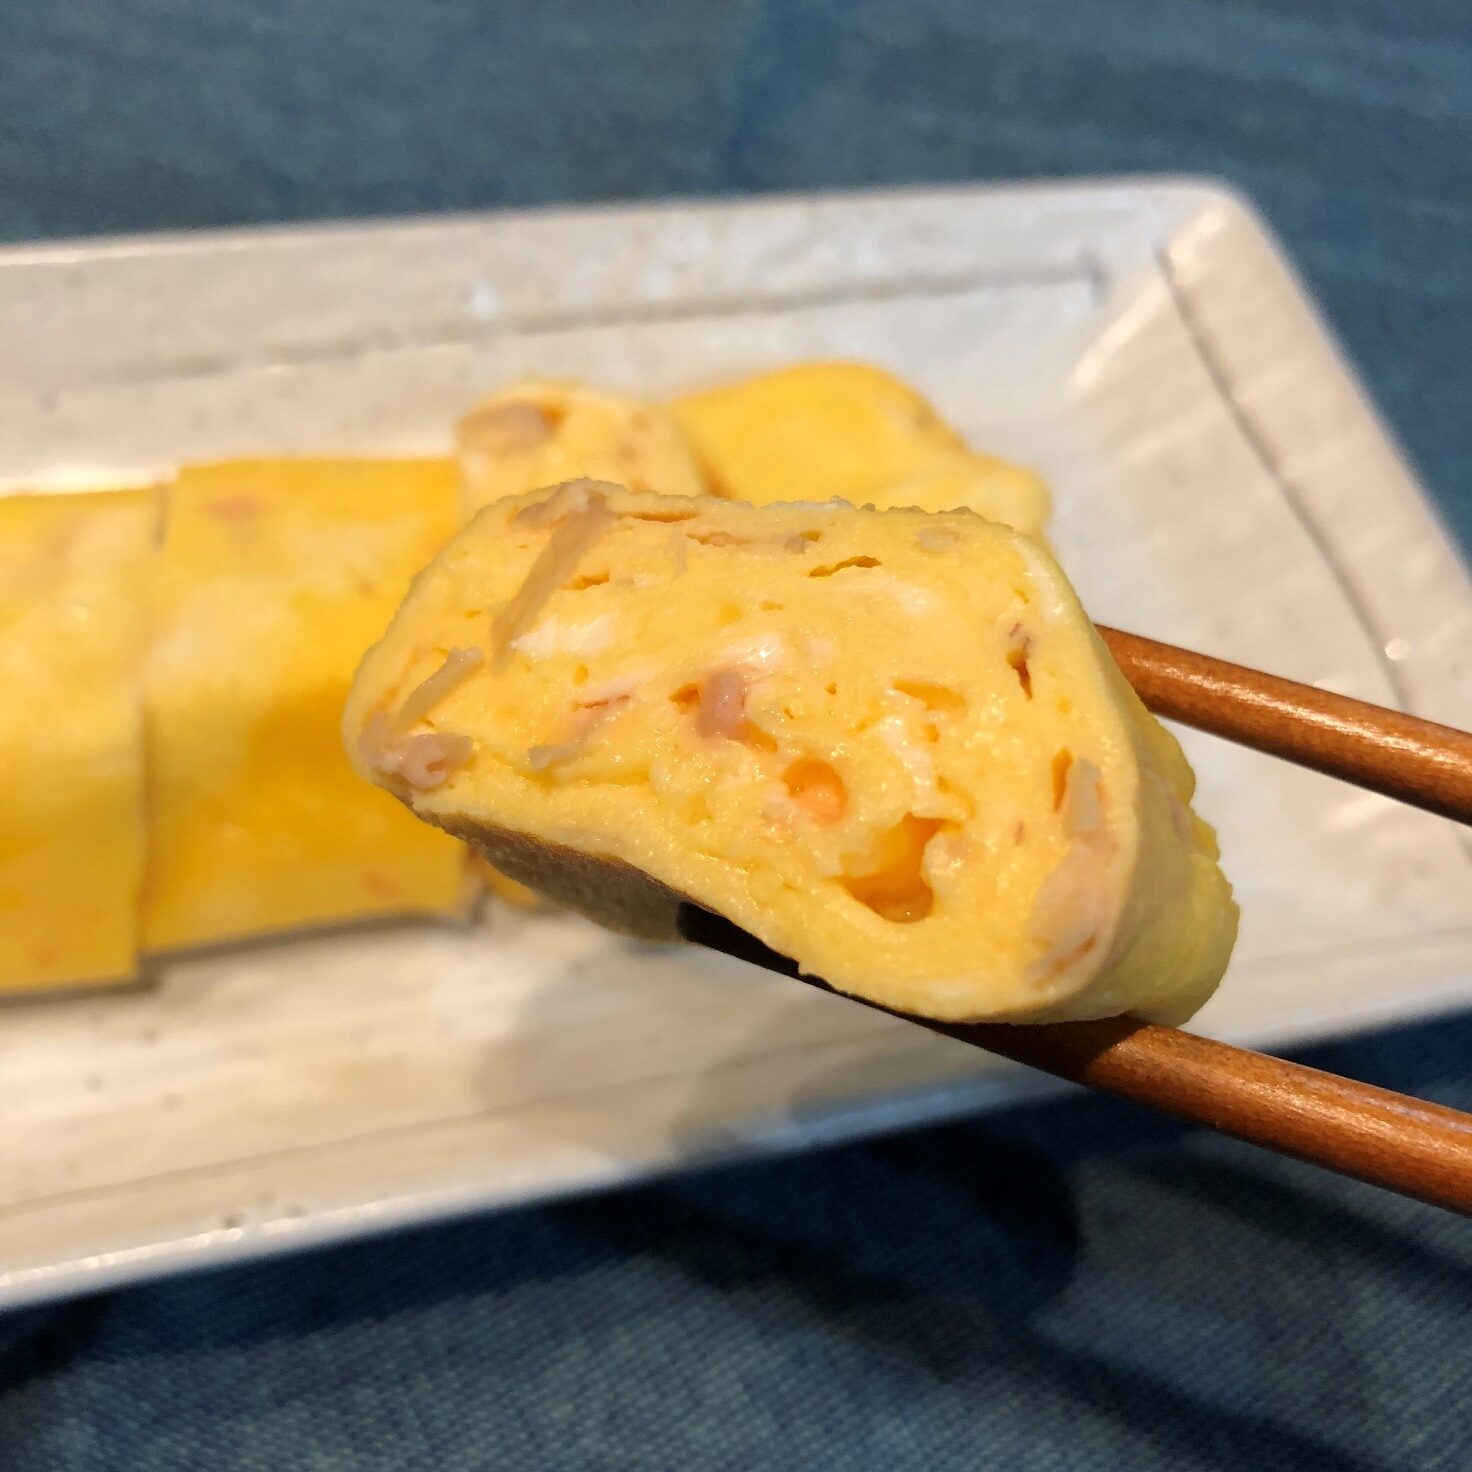 箸で持ち上げた業務スーパーの甘酢平切生姜入り玉子焼きのアップ